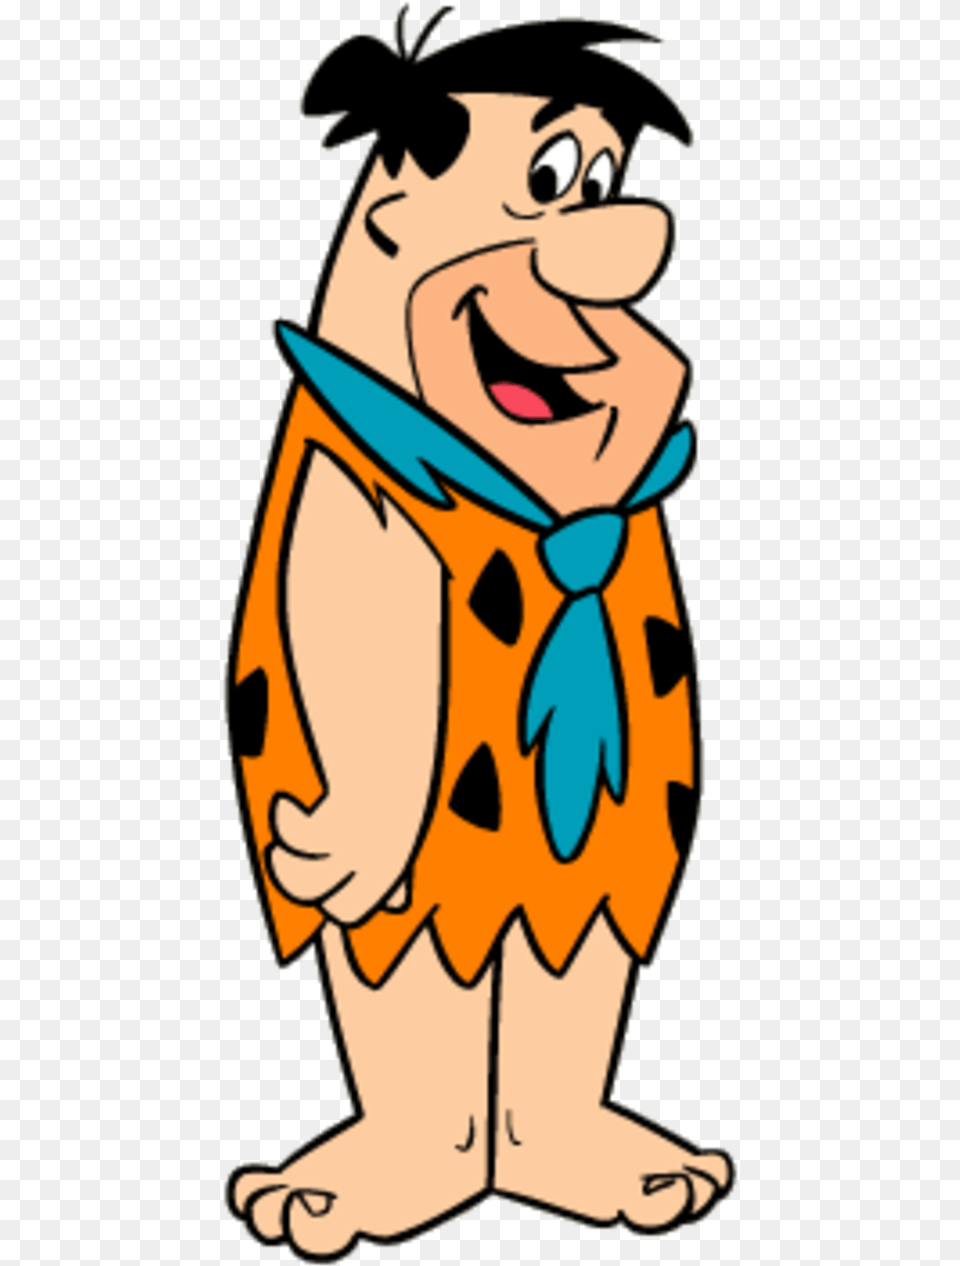 Fred Flintstone Pebbles Flinstone Betty Rubble Barney Fred Flintstone, Person, Face, Head, Cartoon Free Png